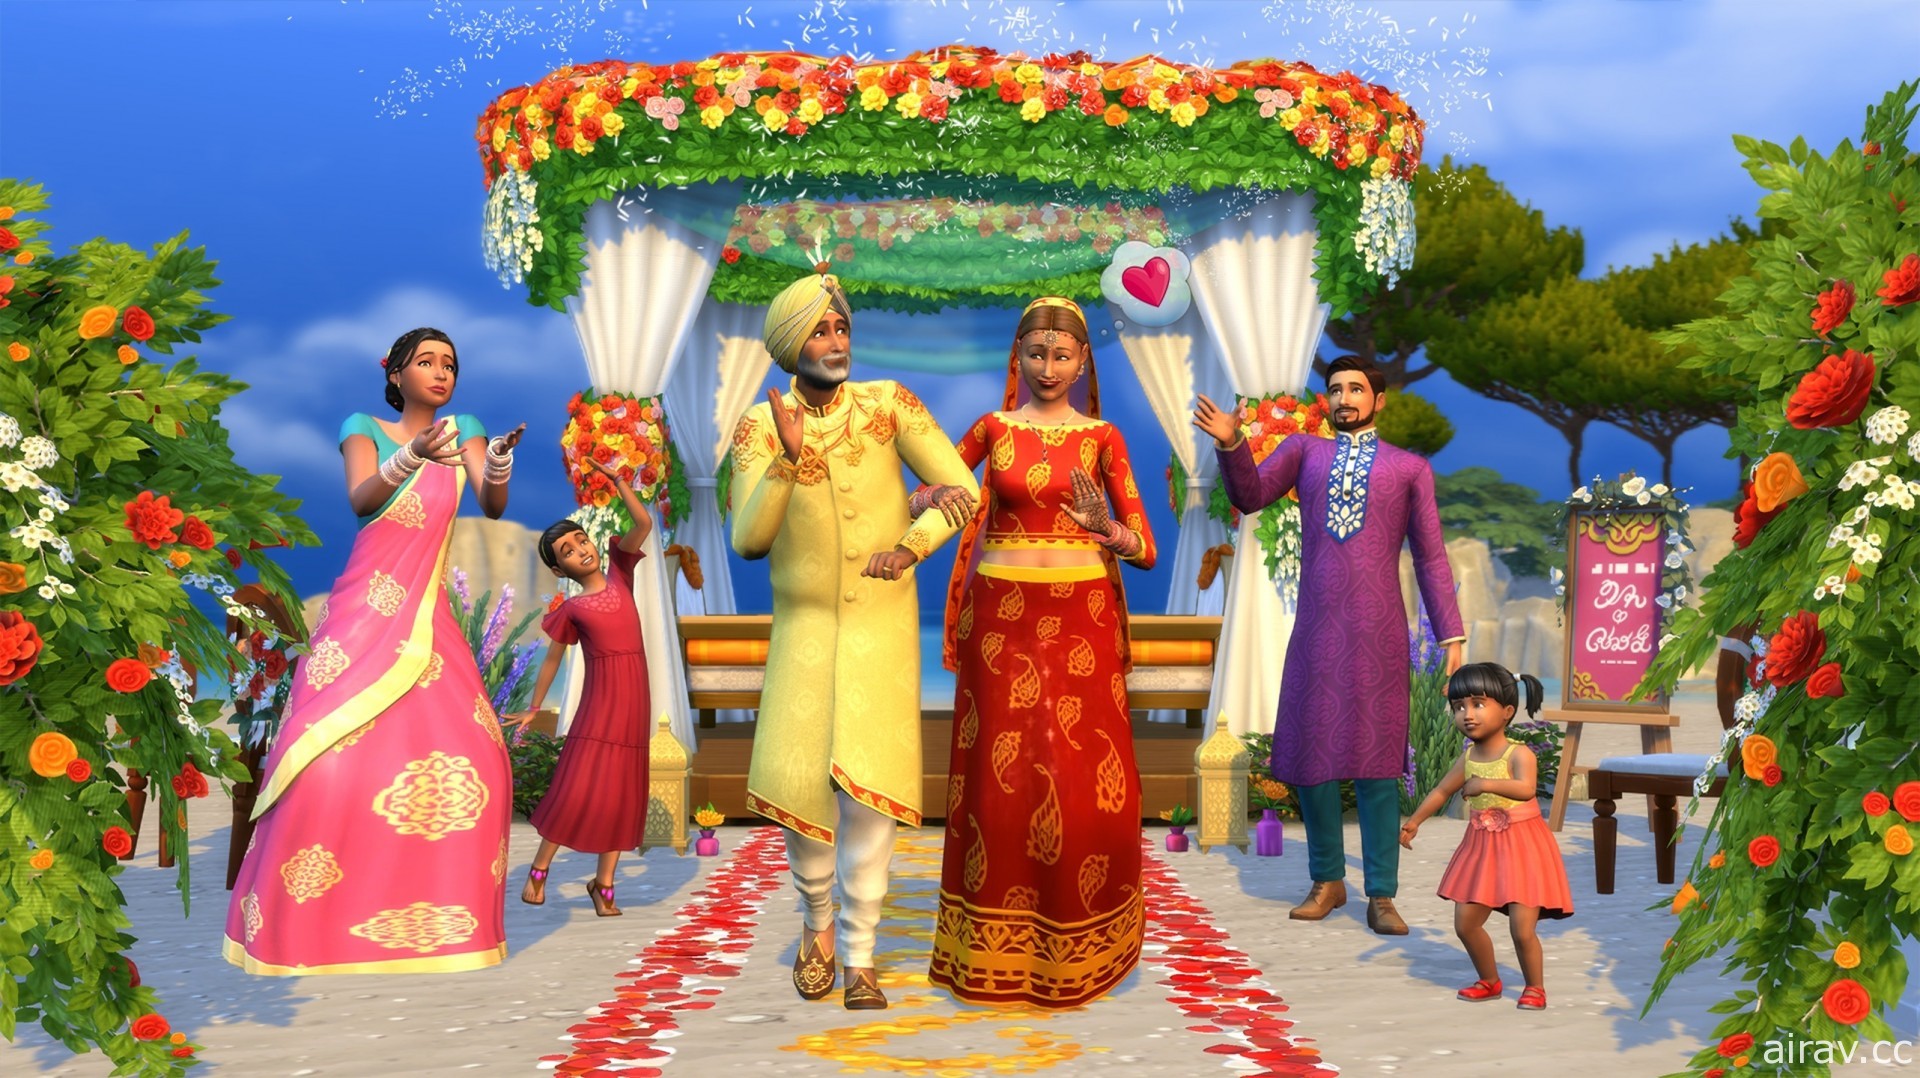 《模擬市民 4 婚旅奇緣》擴充包 18 日登場  伴隨模擬市民在夢想婚禮高喊「我願意」